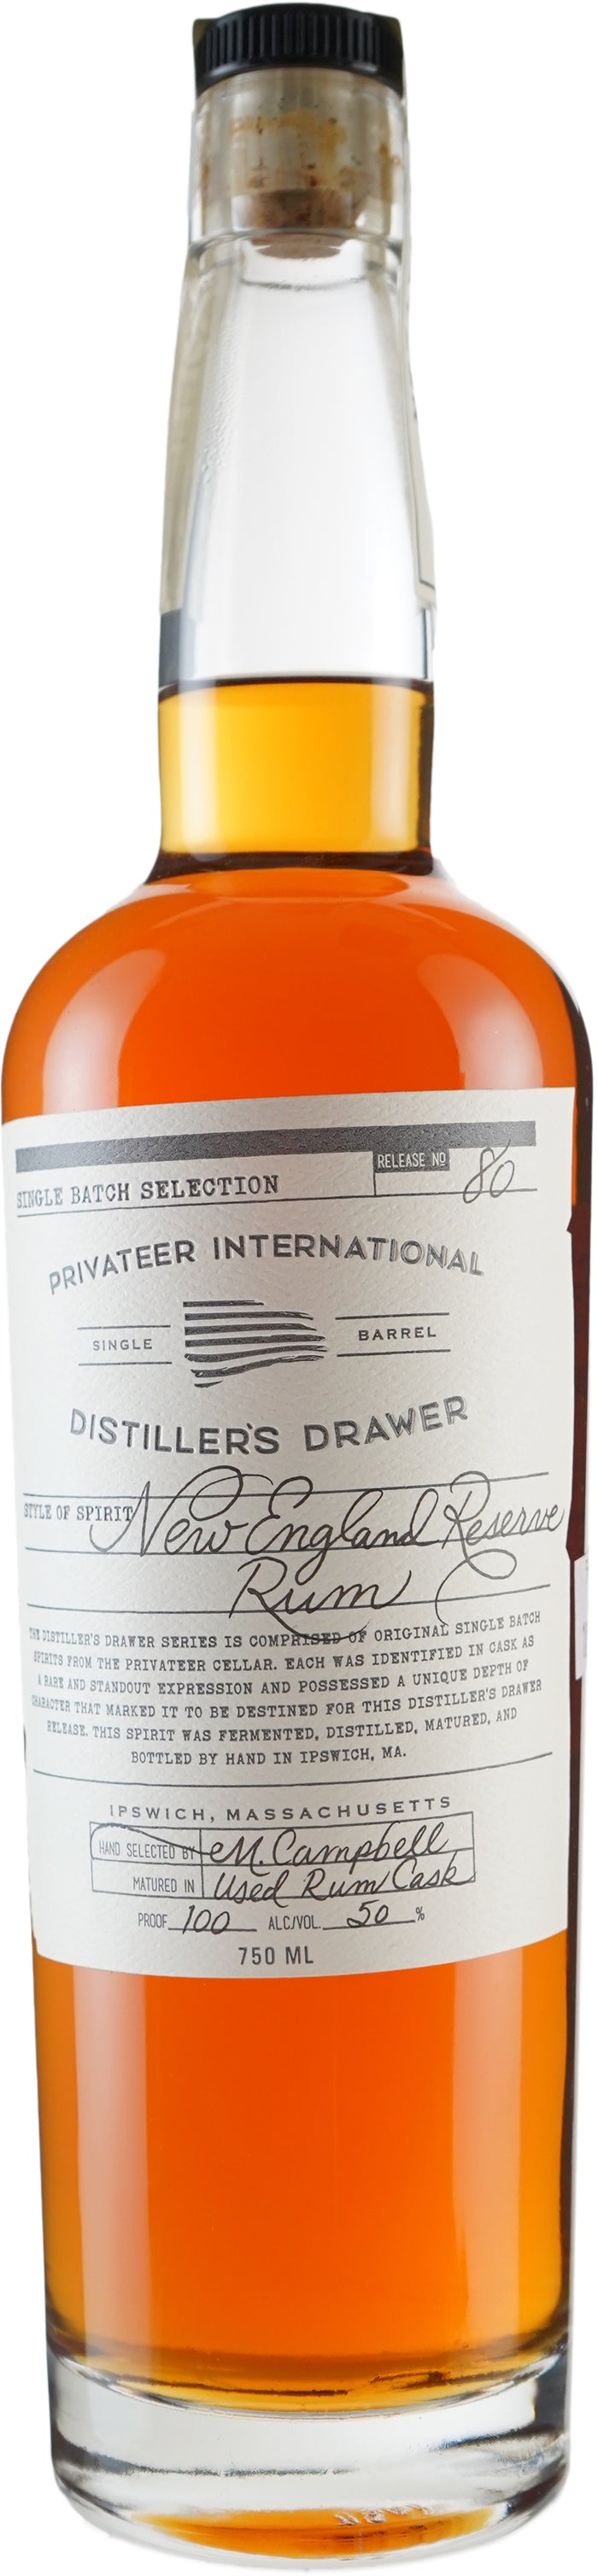 Privateer Distiller's Drawer # 80 New England Bottled in Bond Reserve Rum